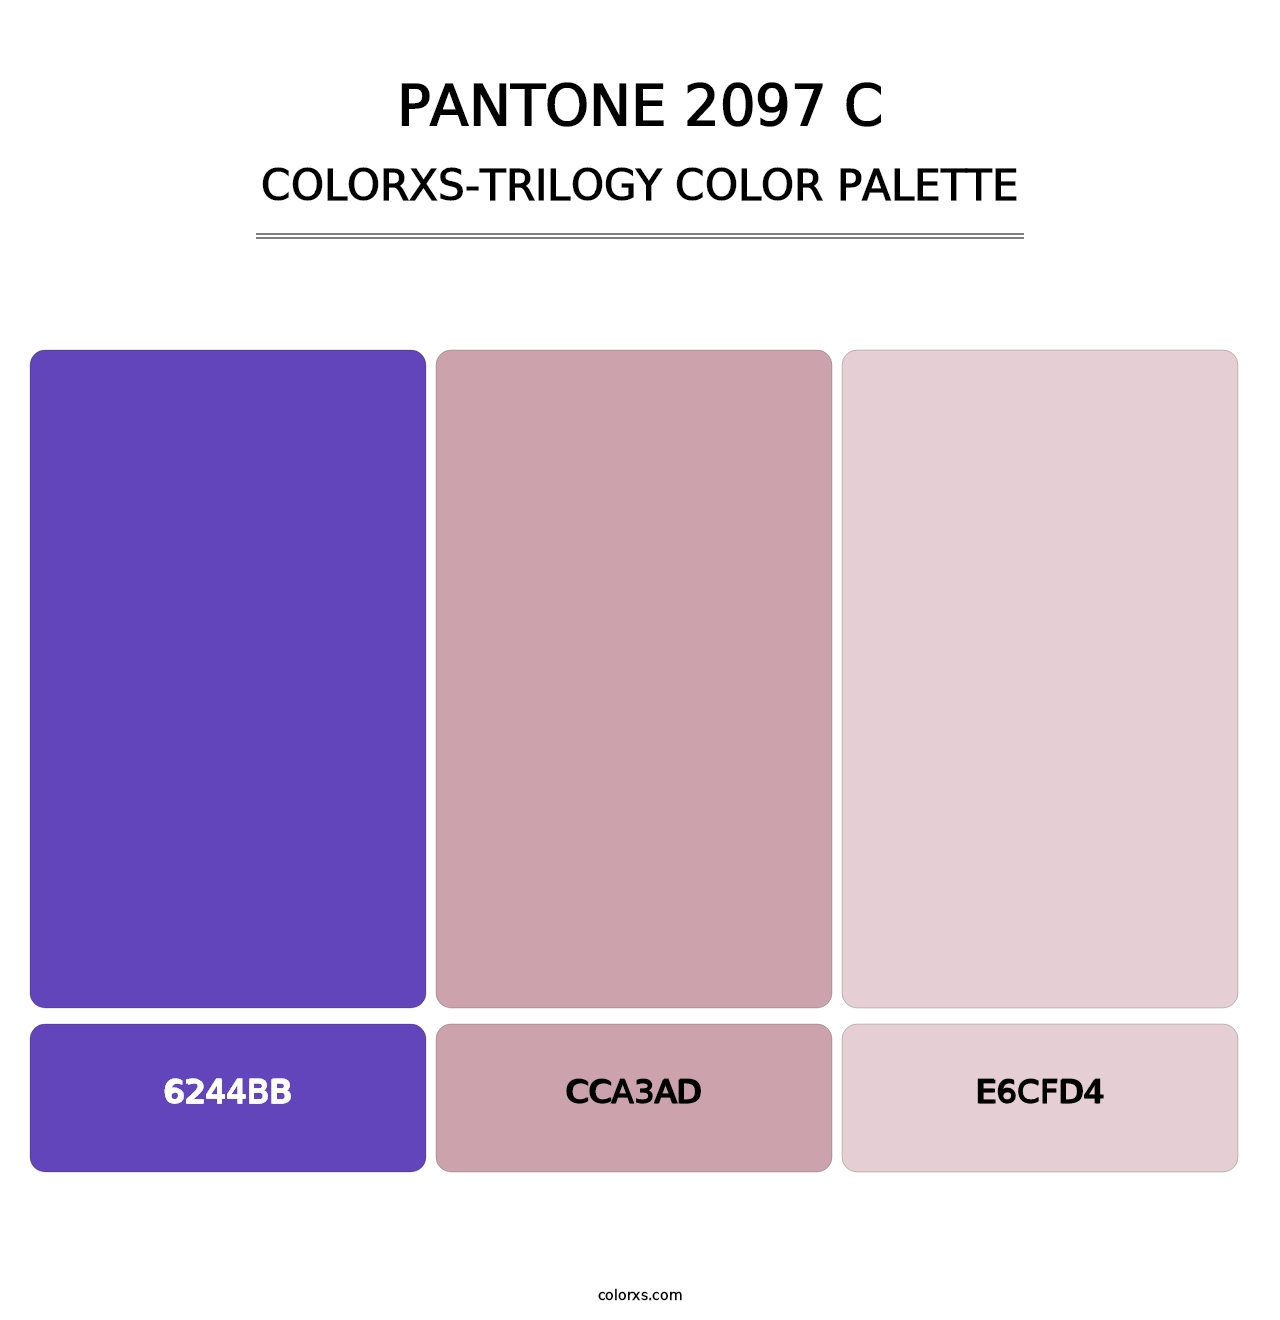 PANTONE 2097 C - Colorxs Trilogy Palette